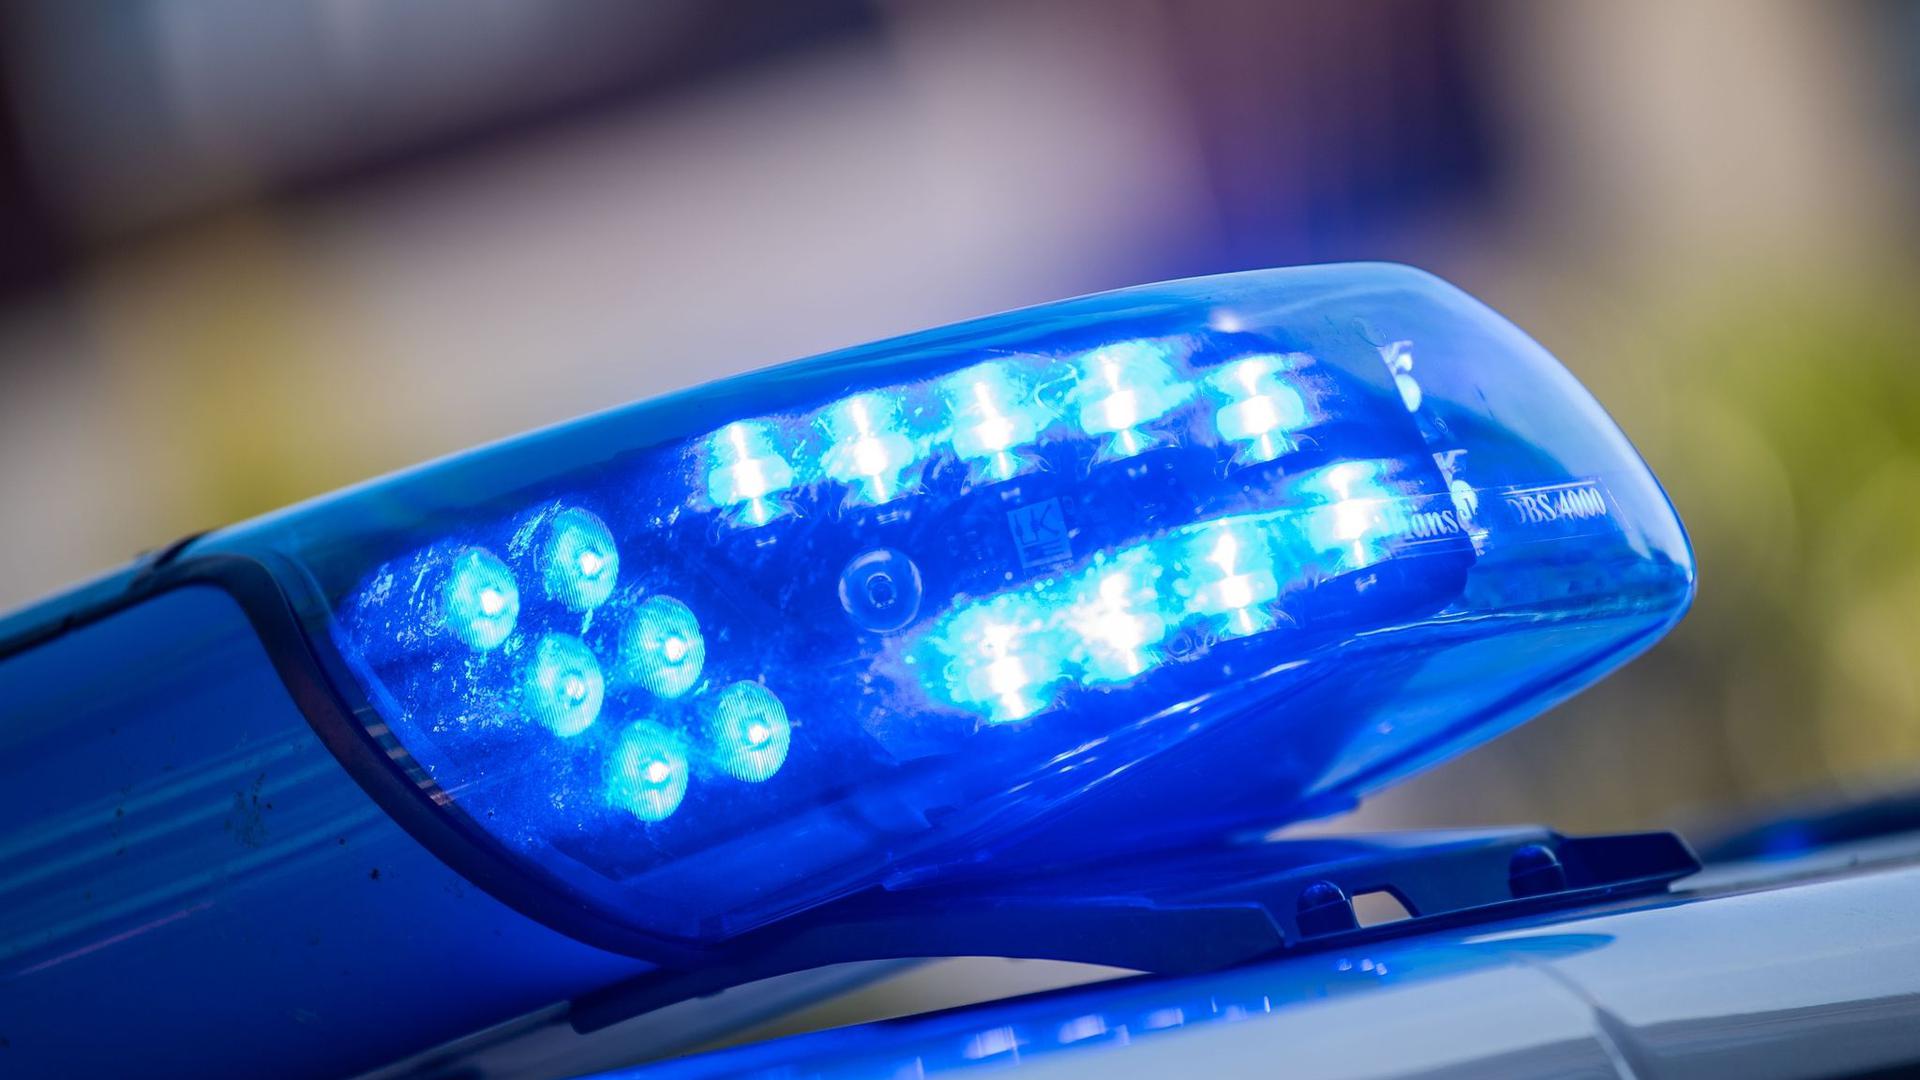 Blaulicht: Die Polizei in Münster hat nach einem jungen Mann, der unter Mordverdacht steht, gesucht. Nun hat dieser sich gestellt.